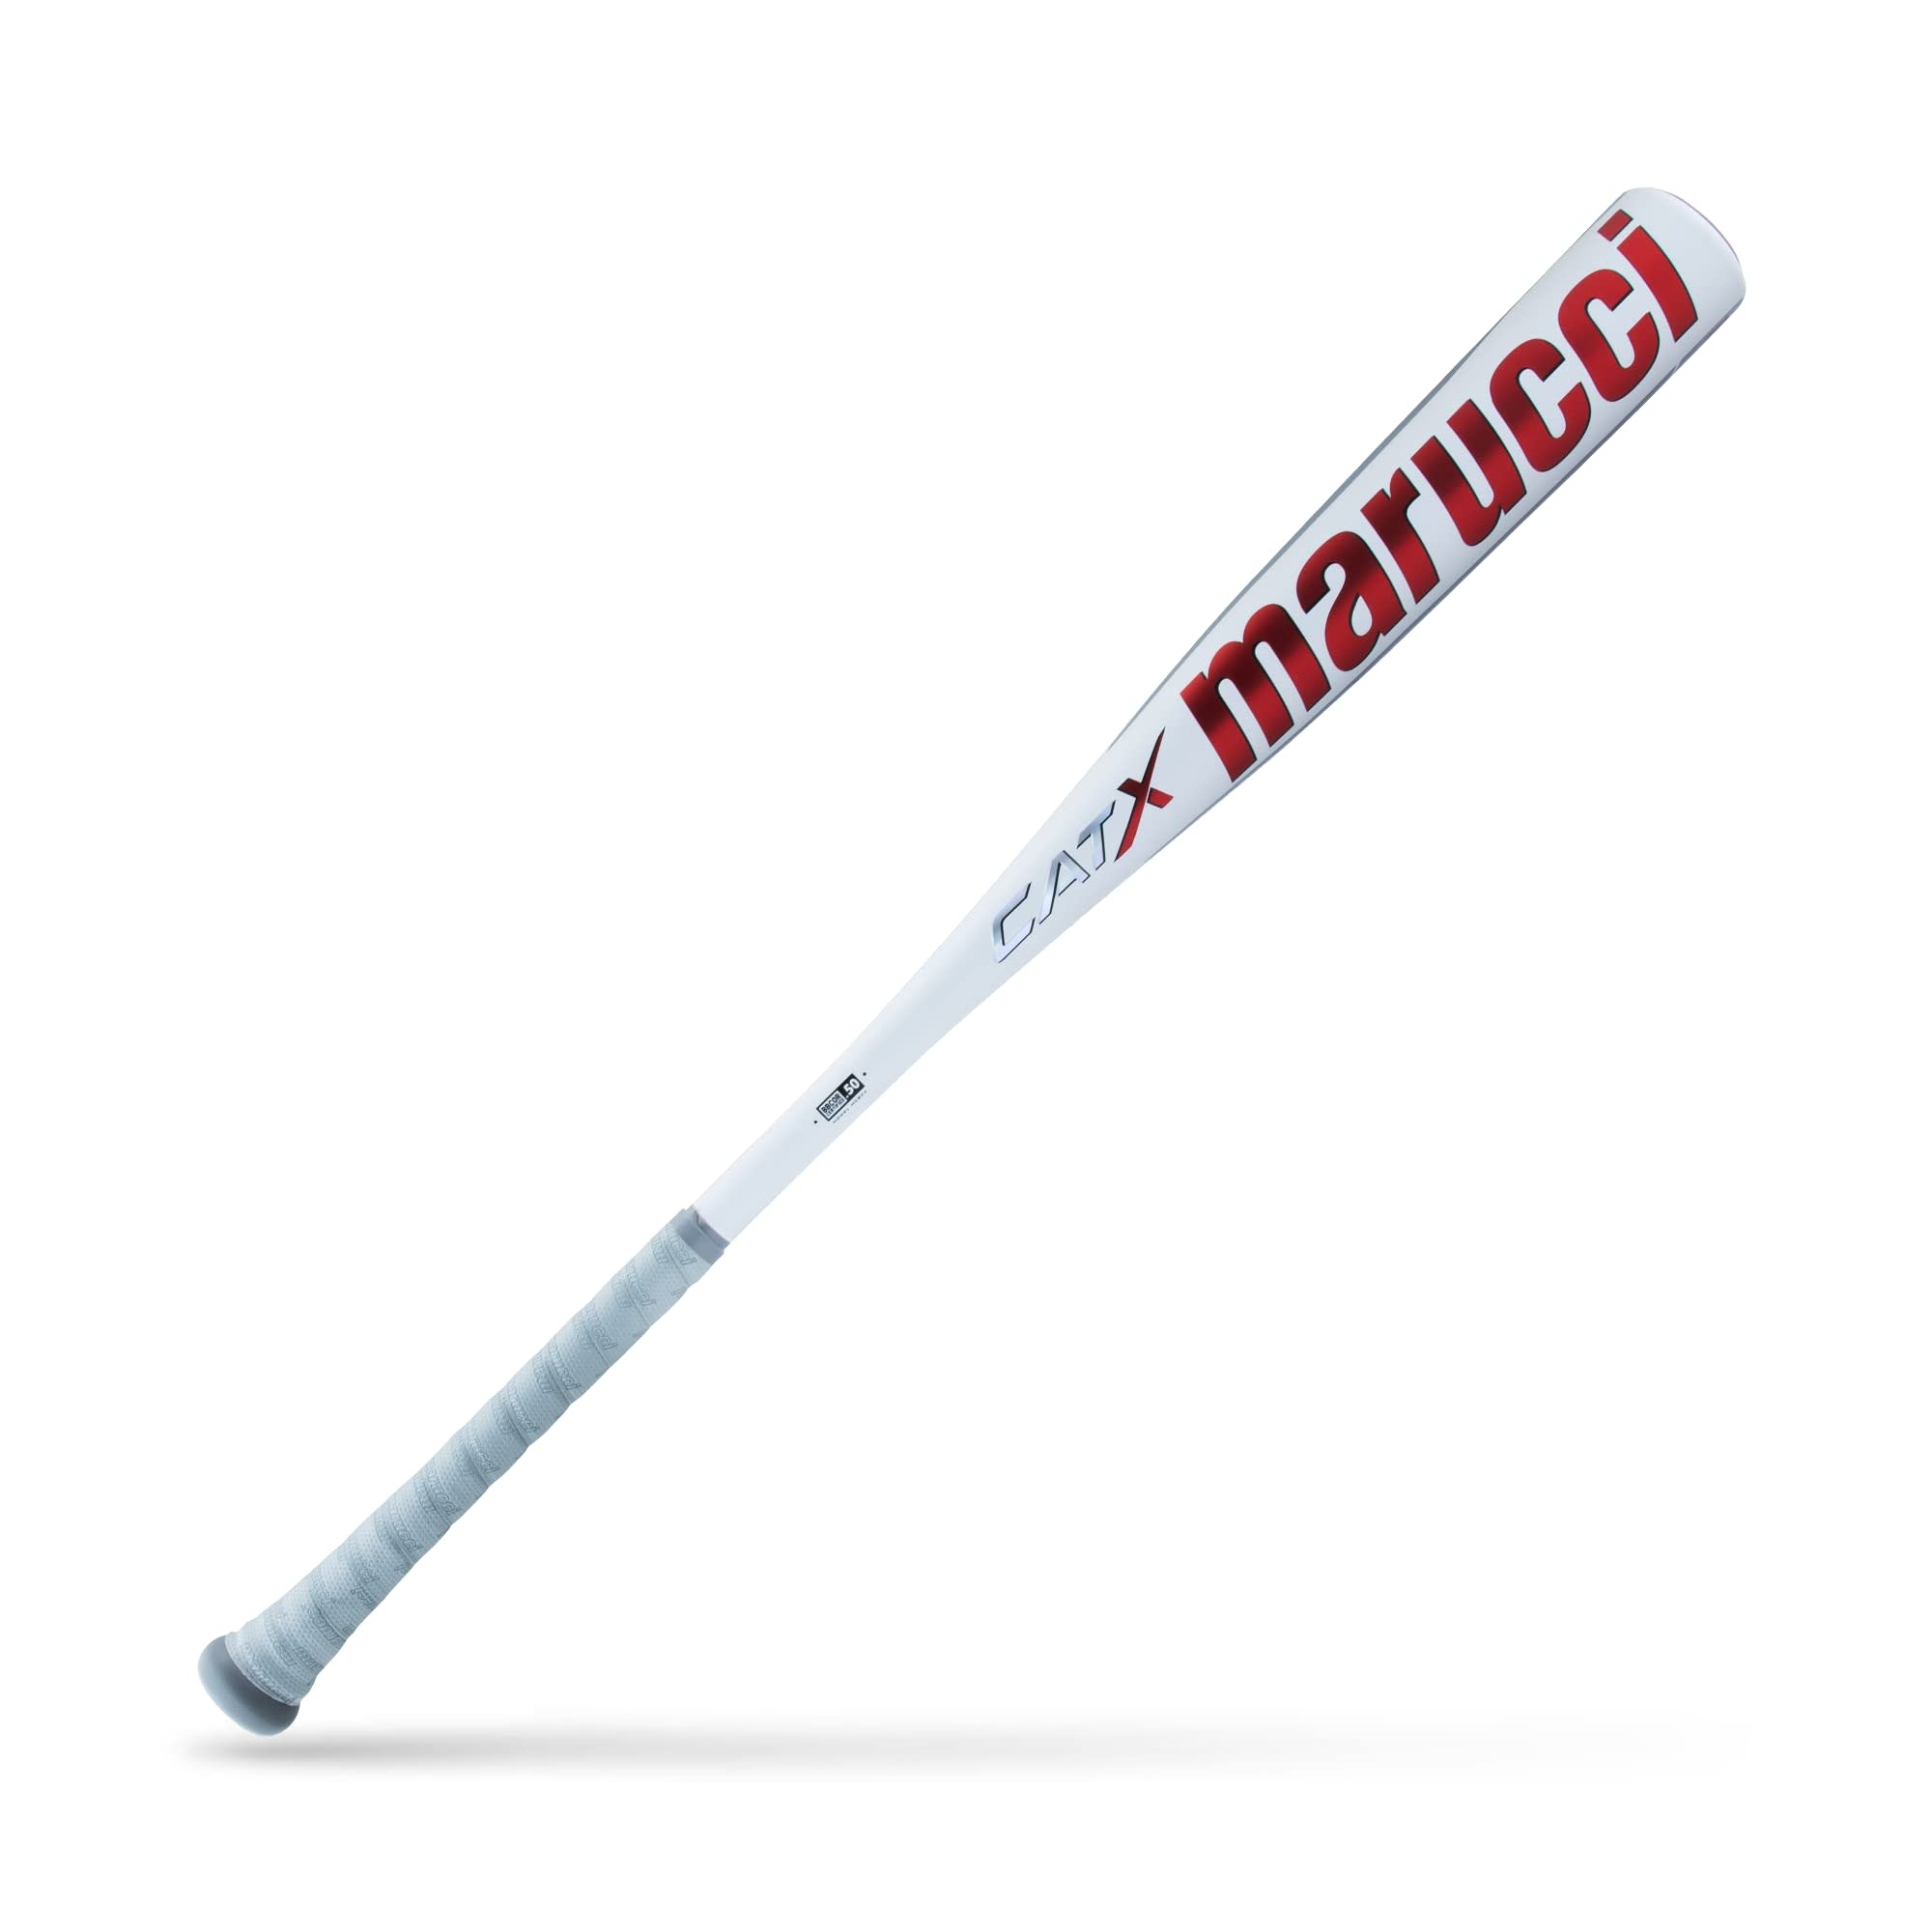 Marucci CATX BBCOR MCBCX -3 baseball bat